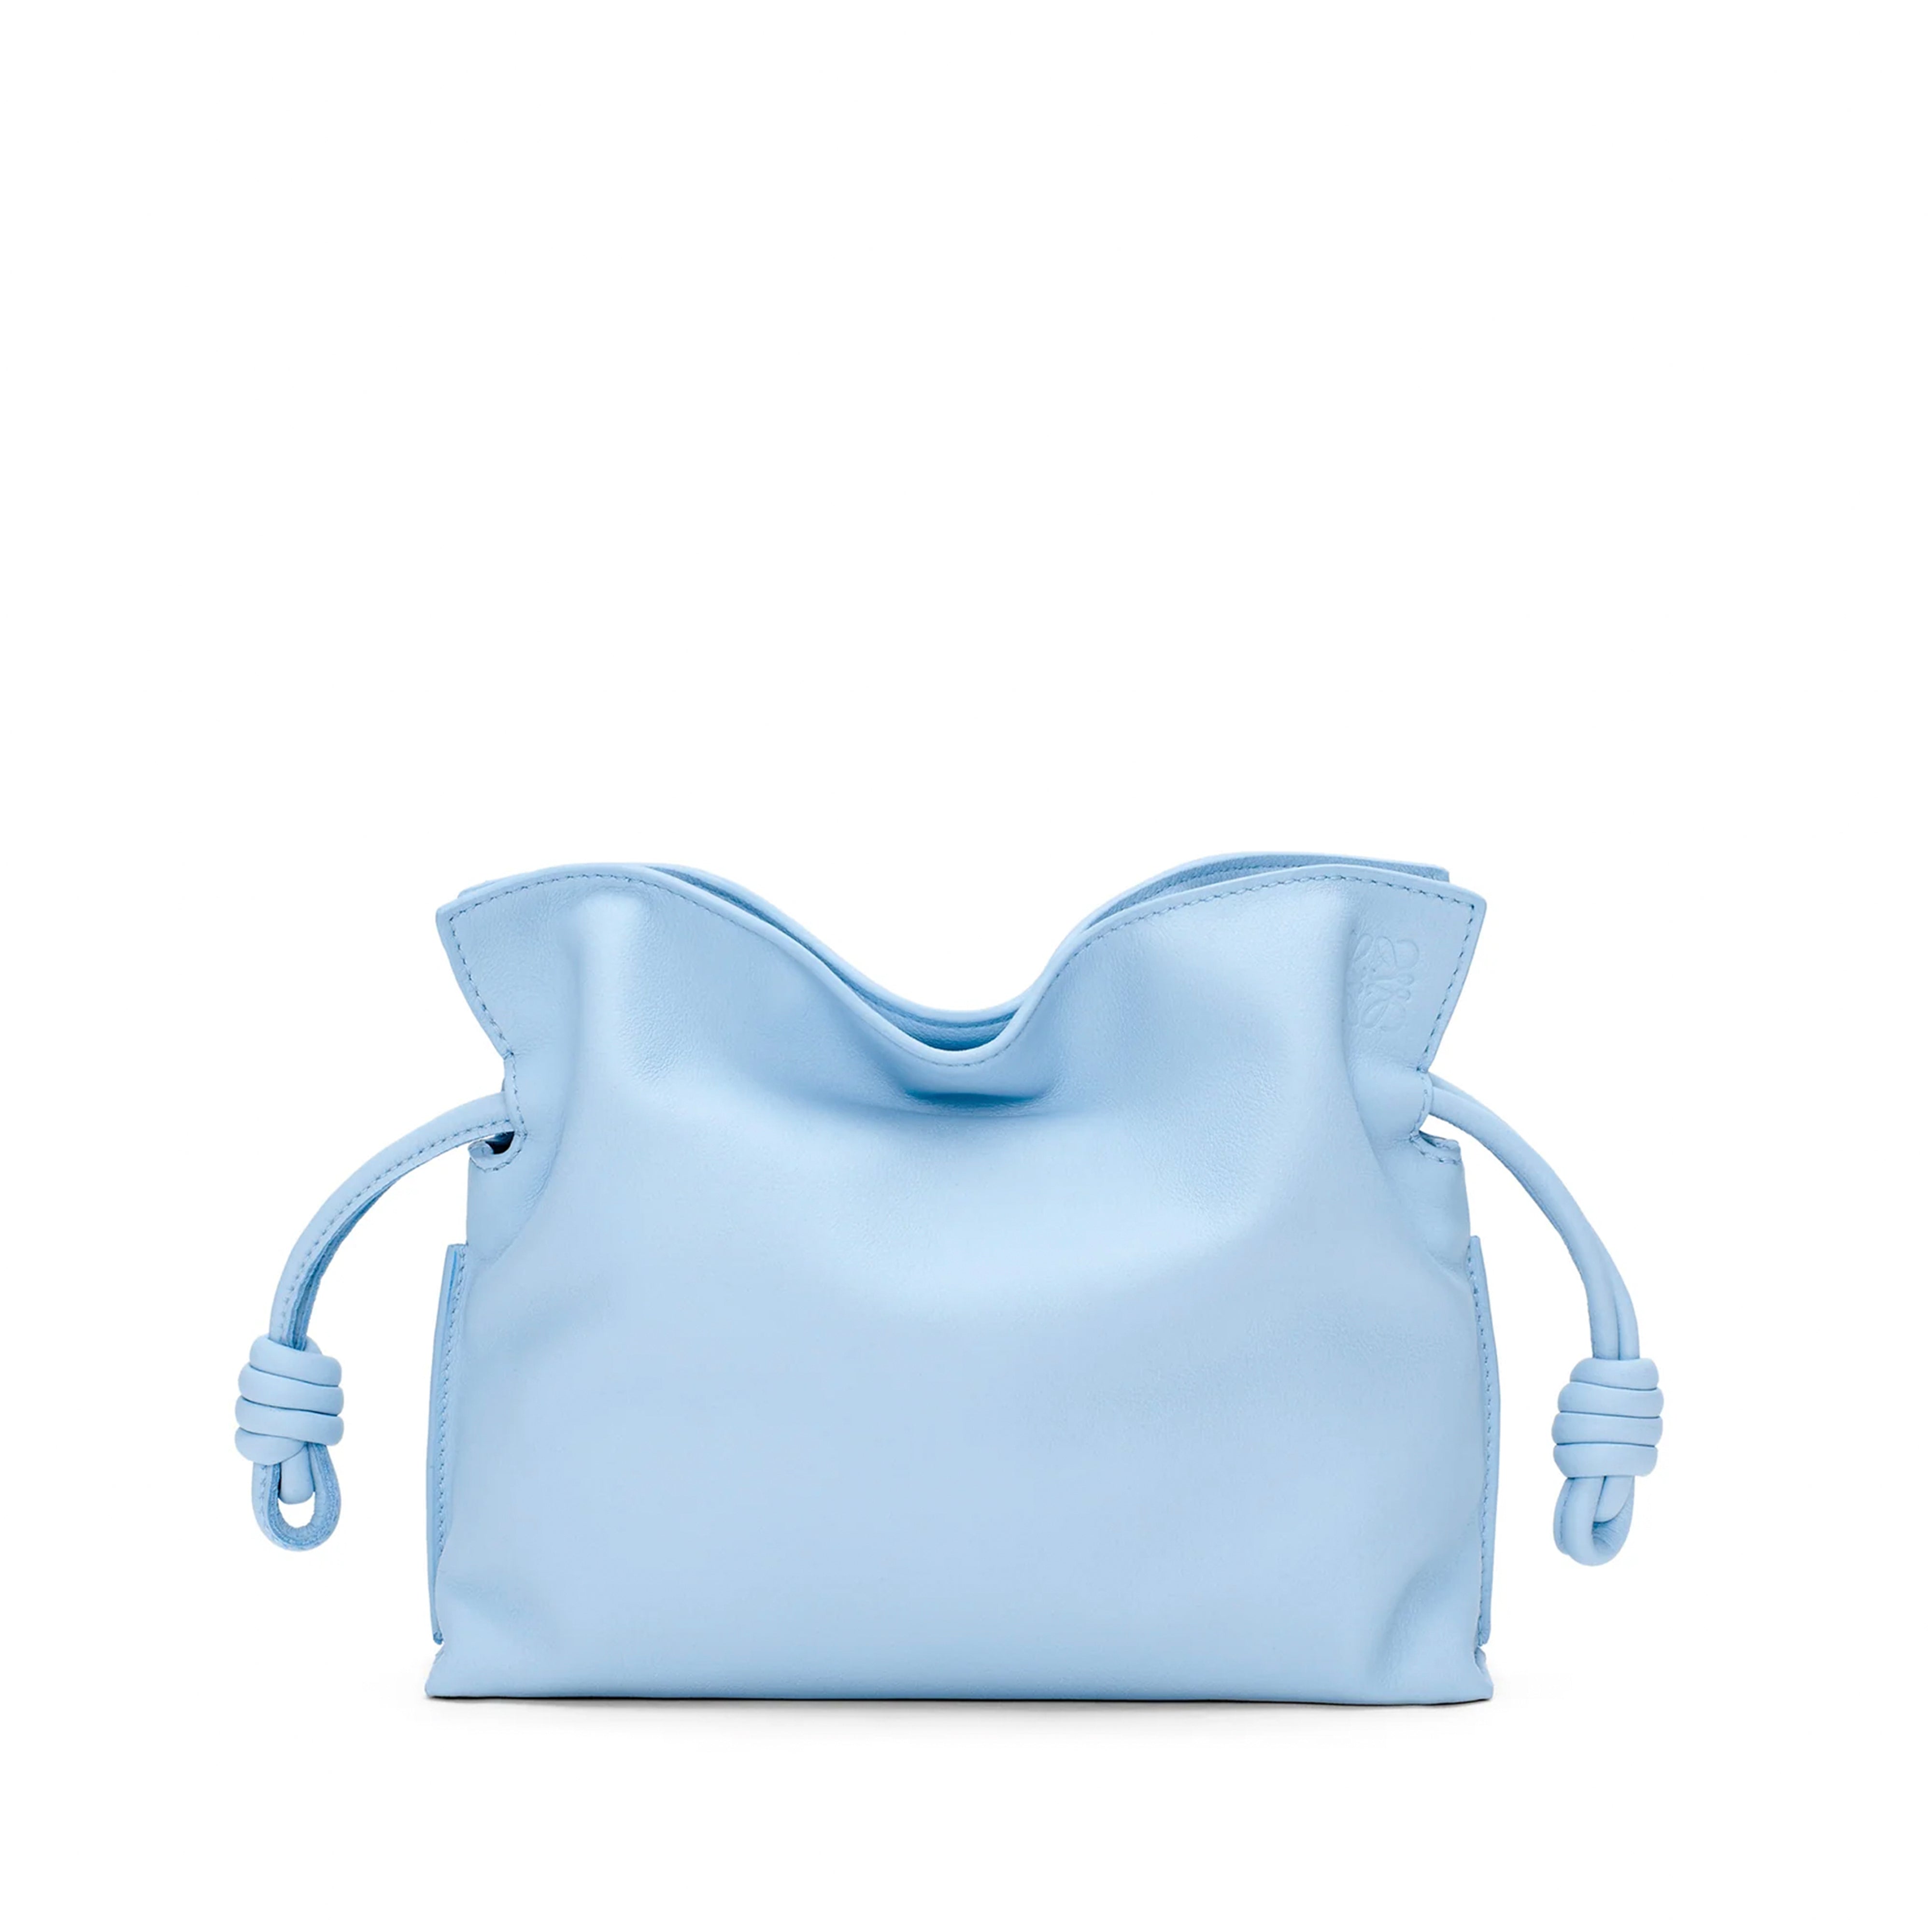 Blue Loewe Anagram Leather Key Holder – Designer Revival